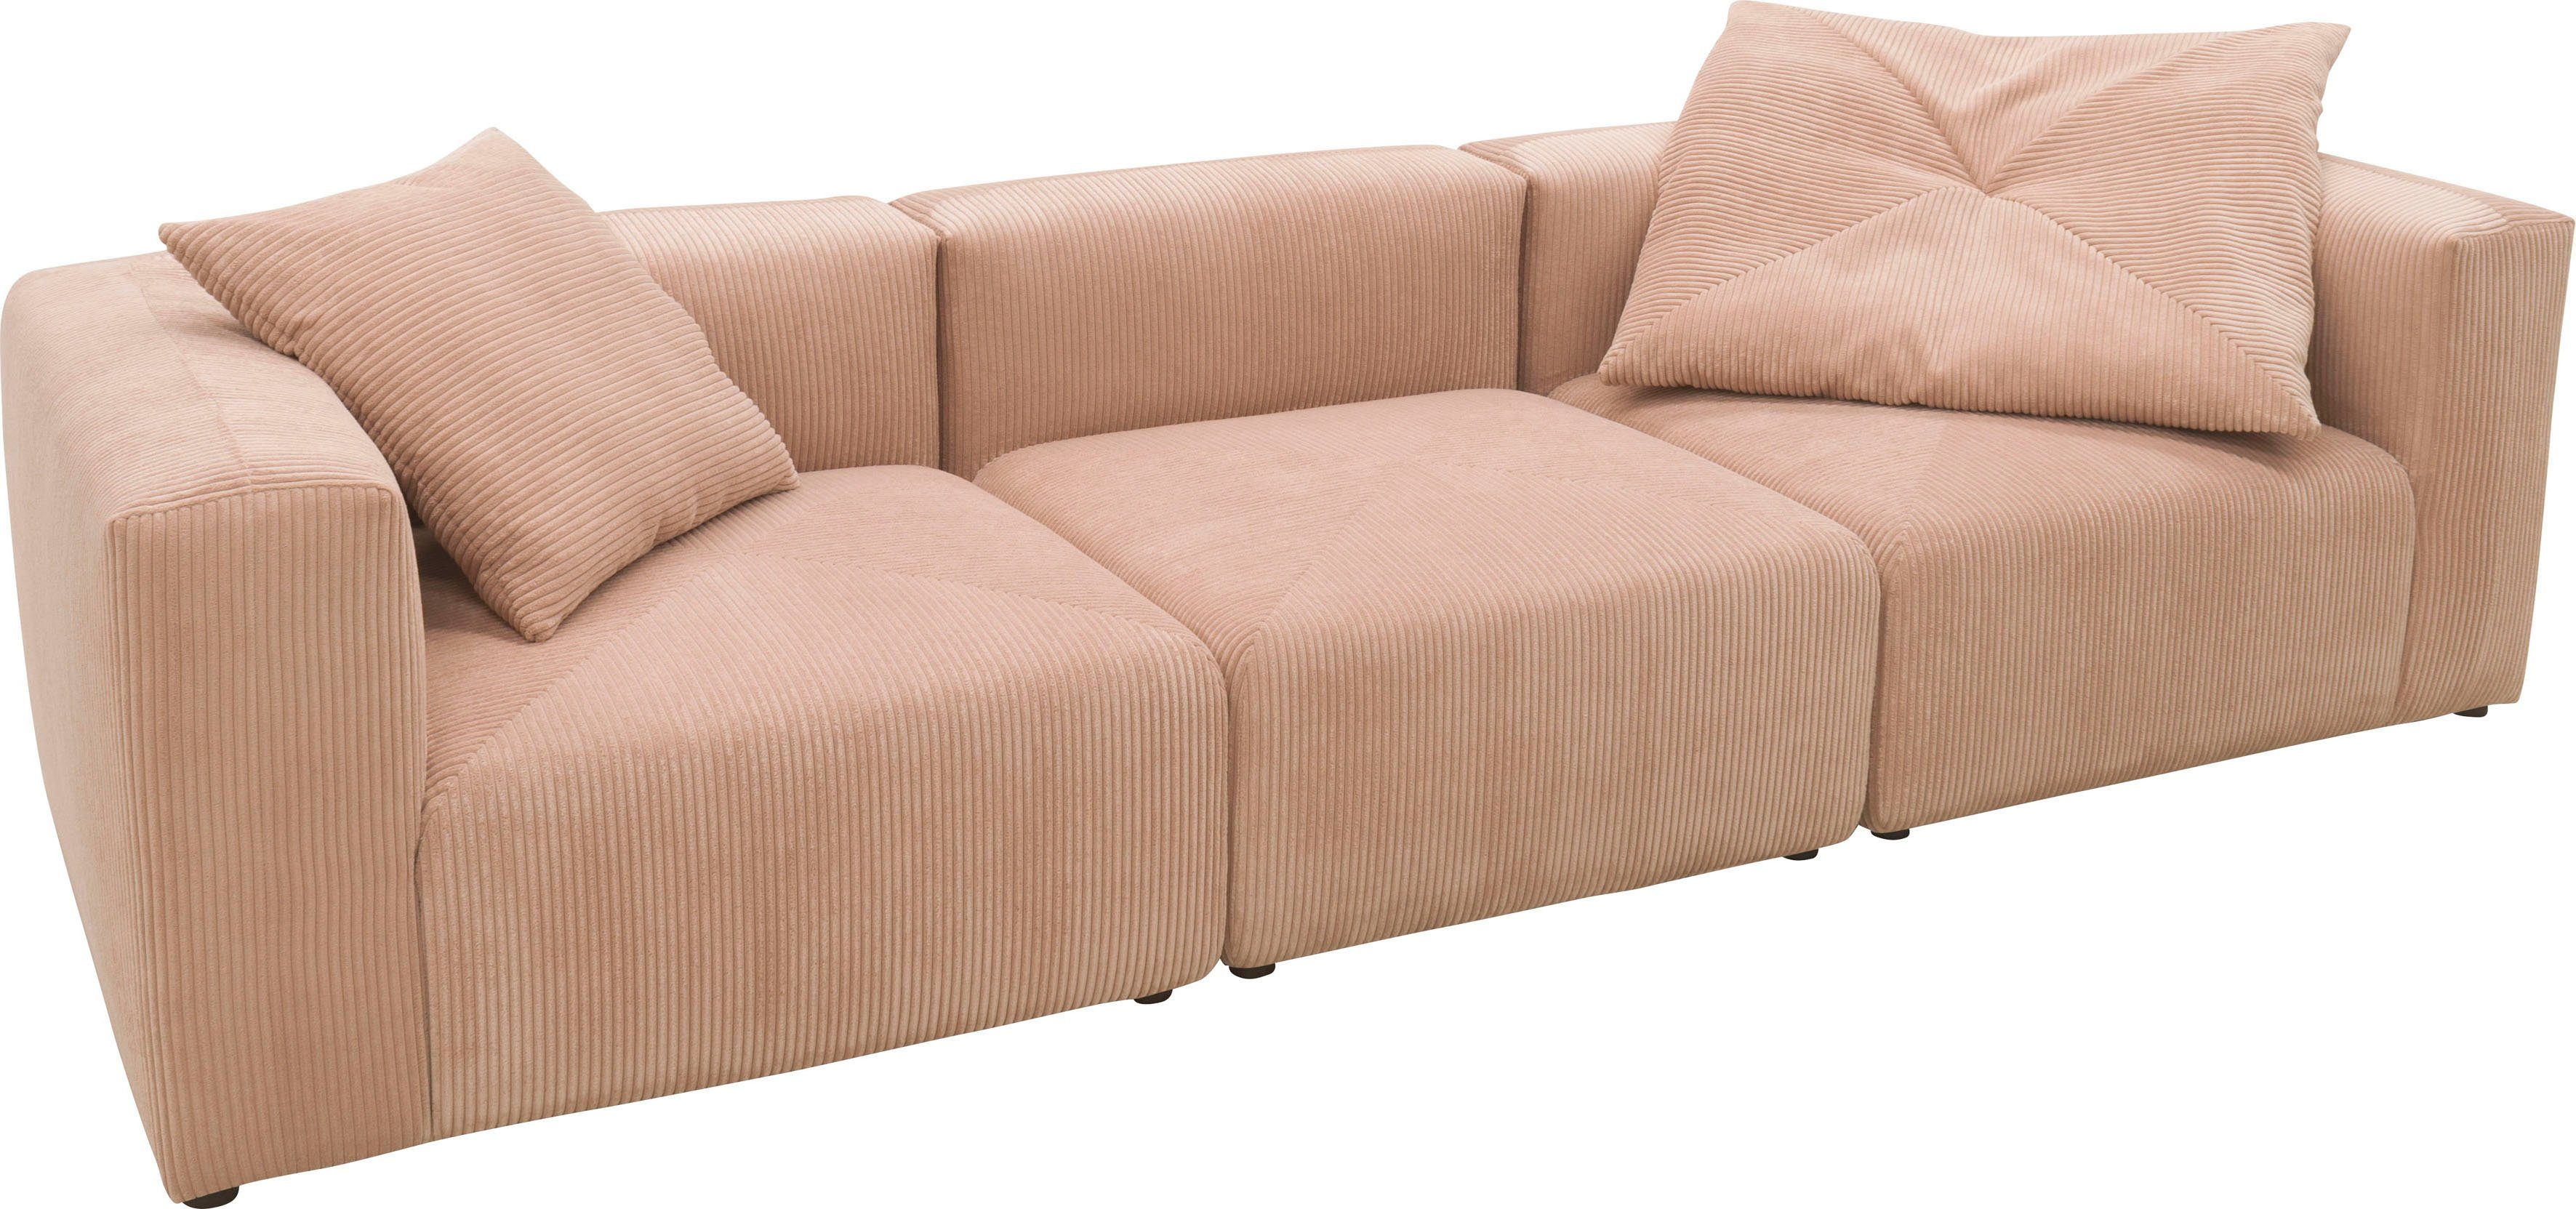 Mittelelement rose Eck- aus Gerrid, und RAUM.ID ein Cord-Bezug, bestehend Modulen: 2 Big-Sofa